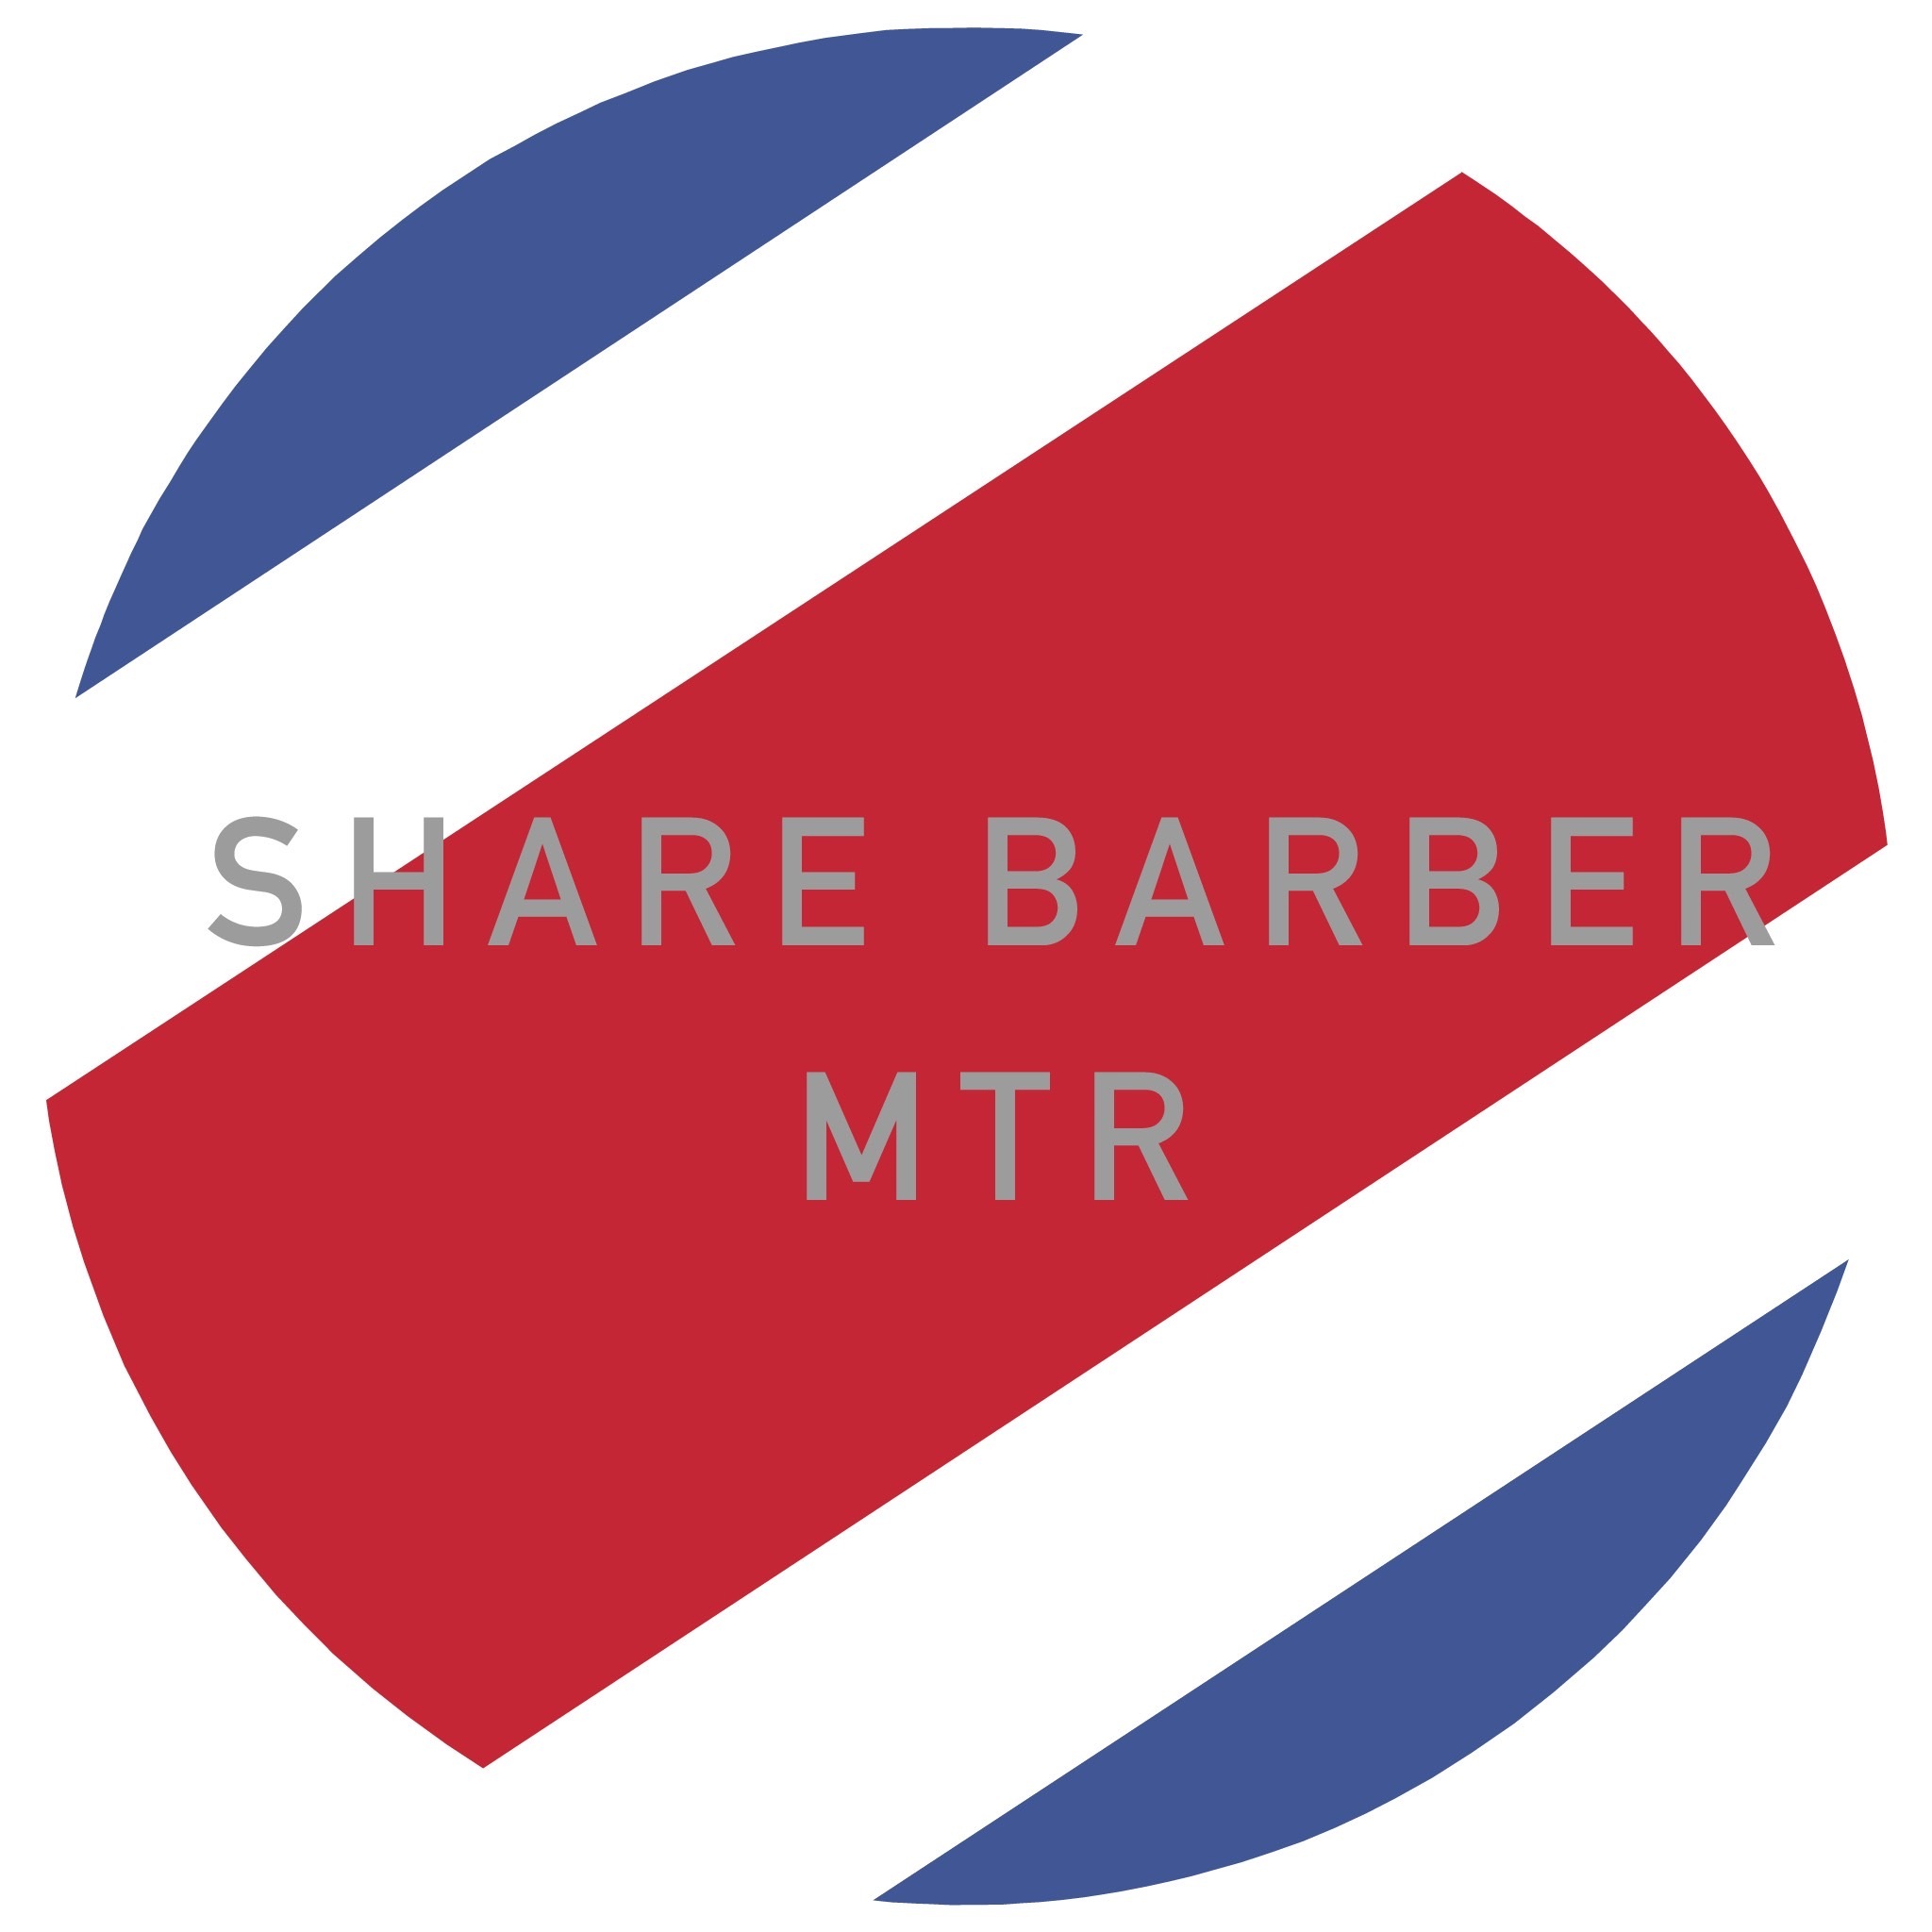 SHAER BARBER MTR